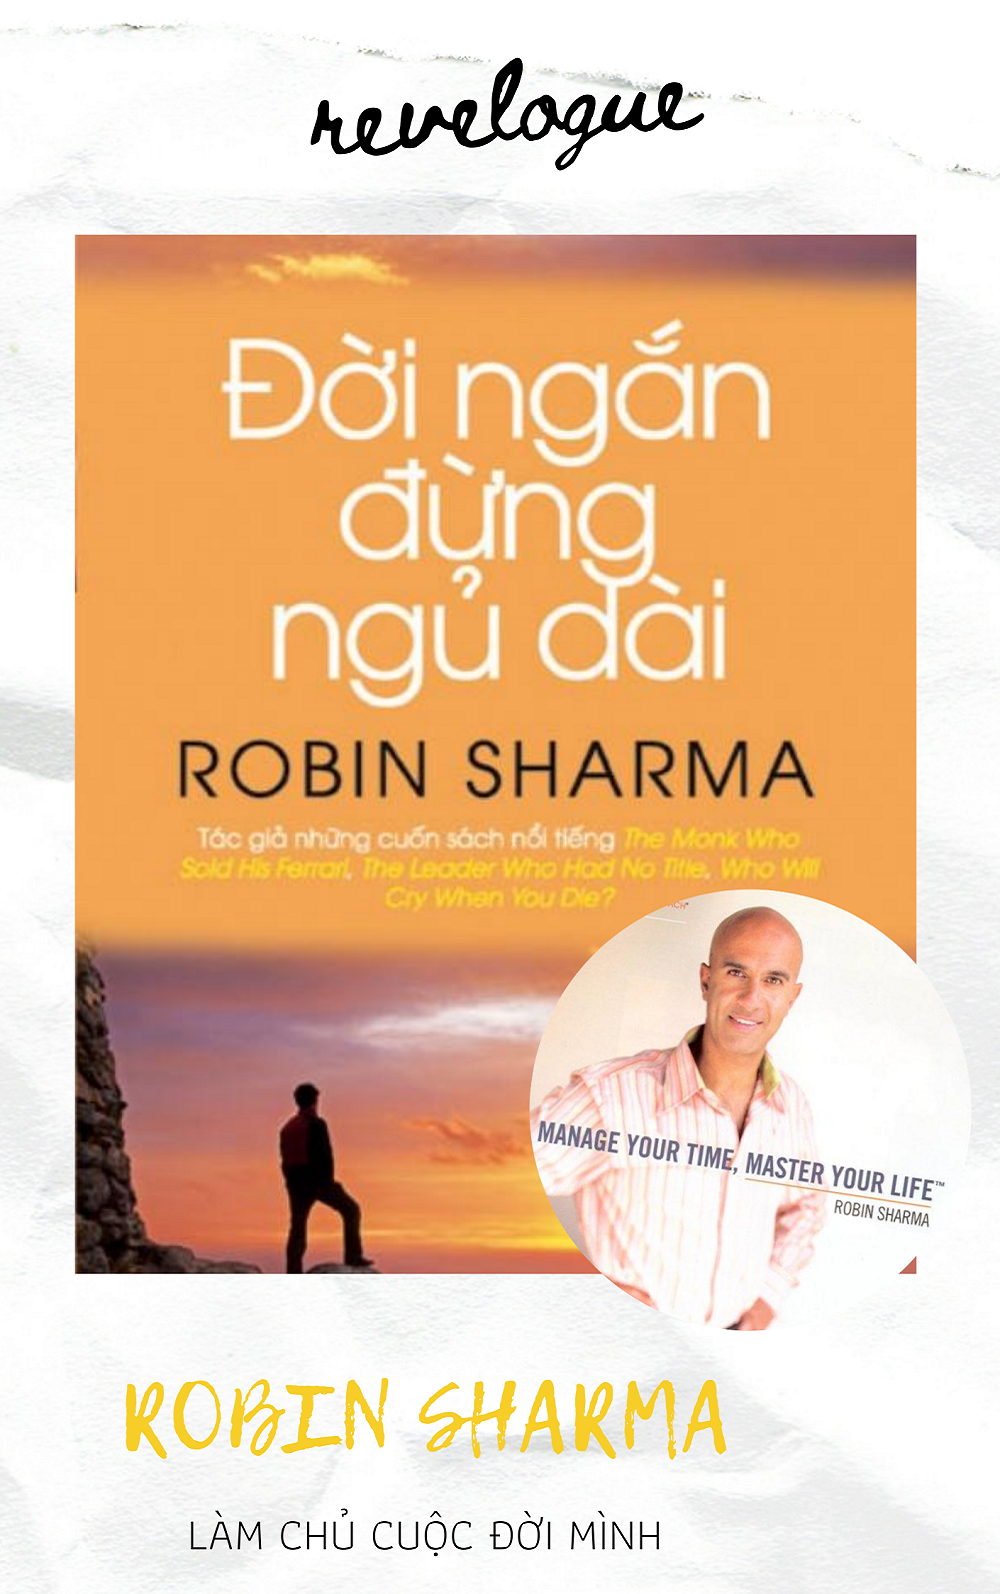 Tác phẩm Đời ngắn đừng ngủ dài cùng nhà văn tài ba Robin Sharma